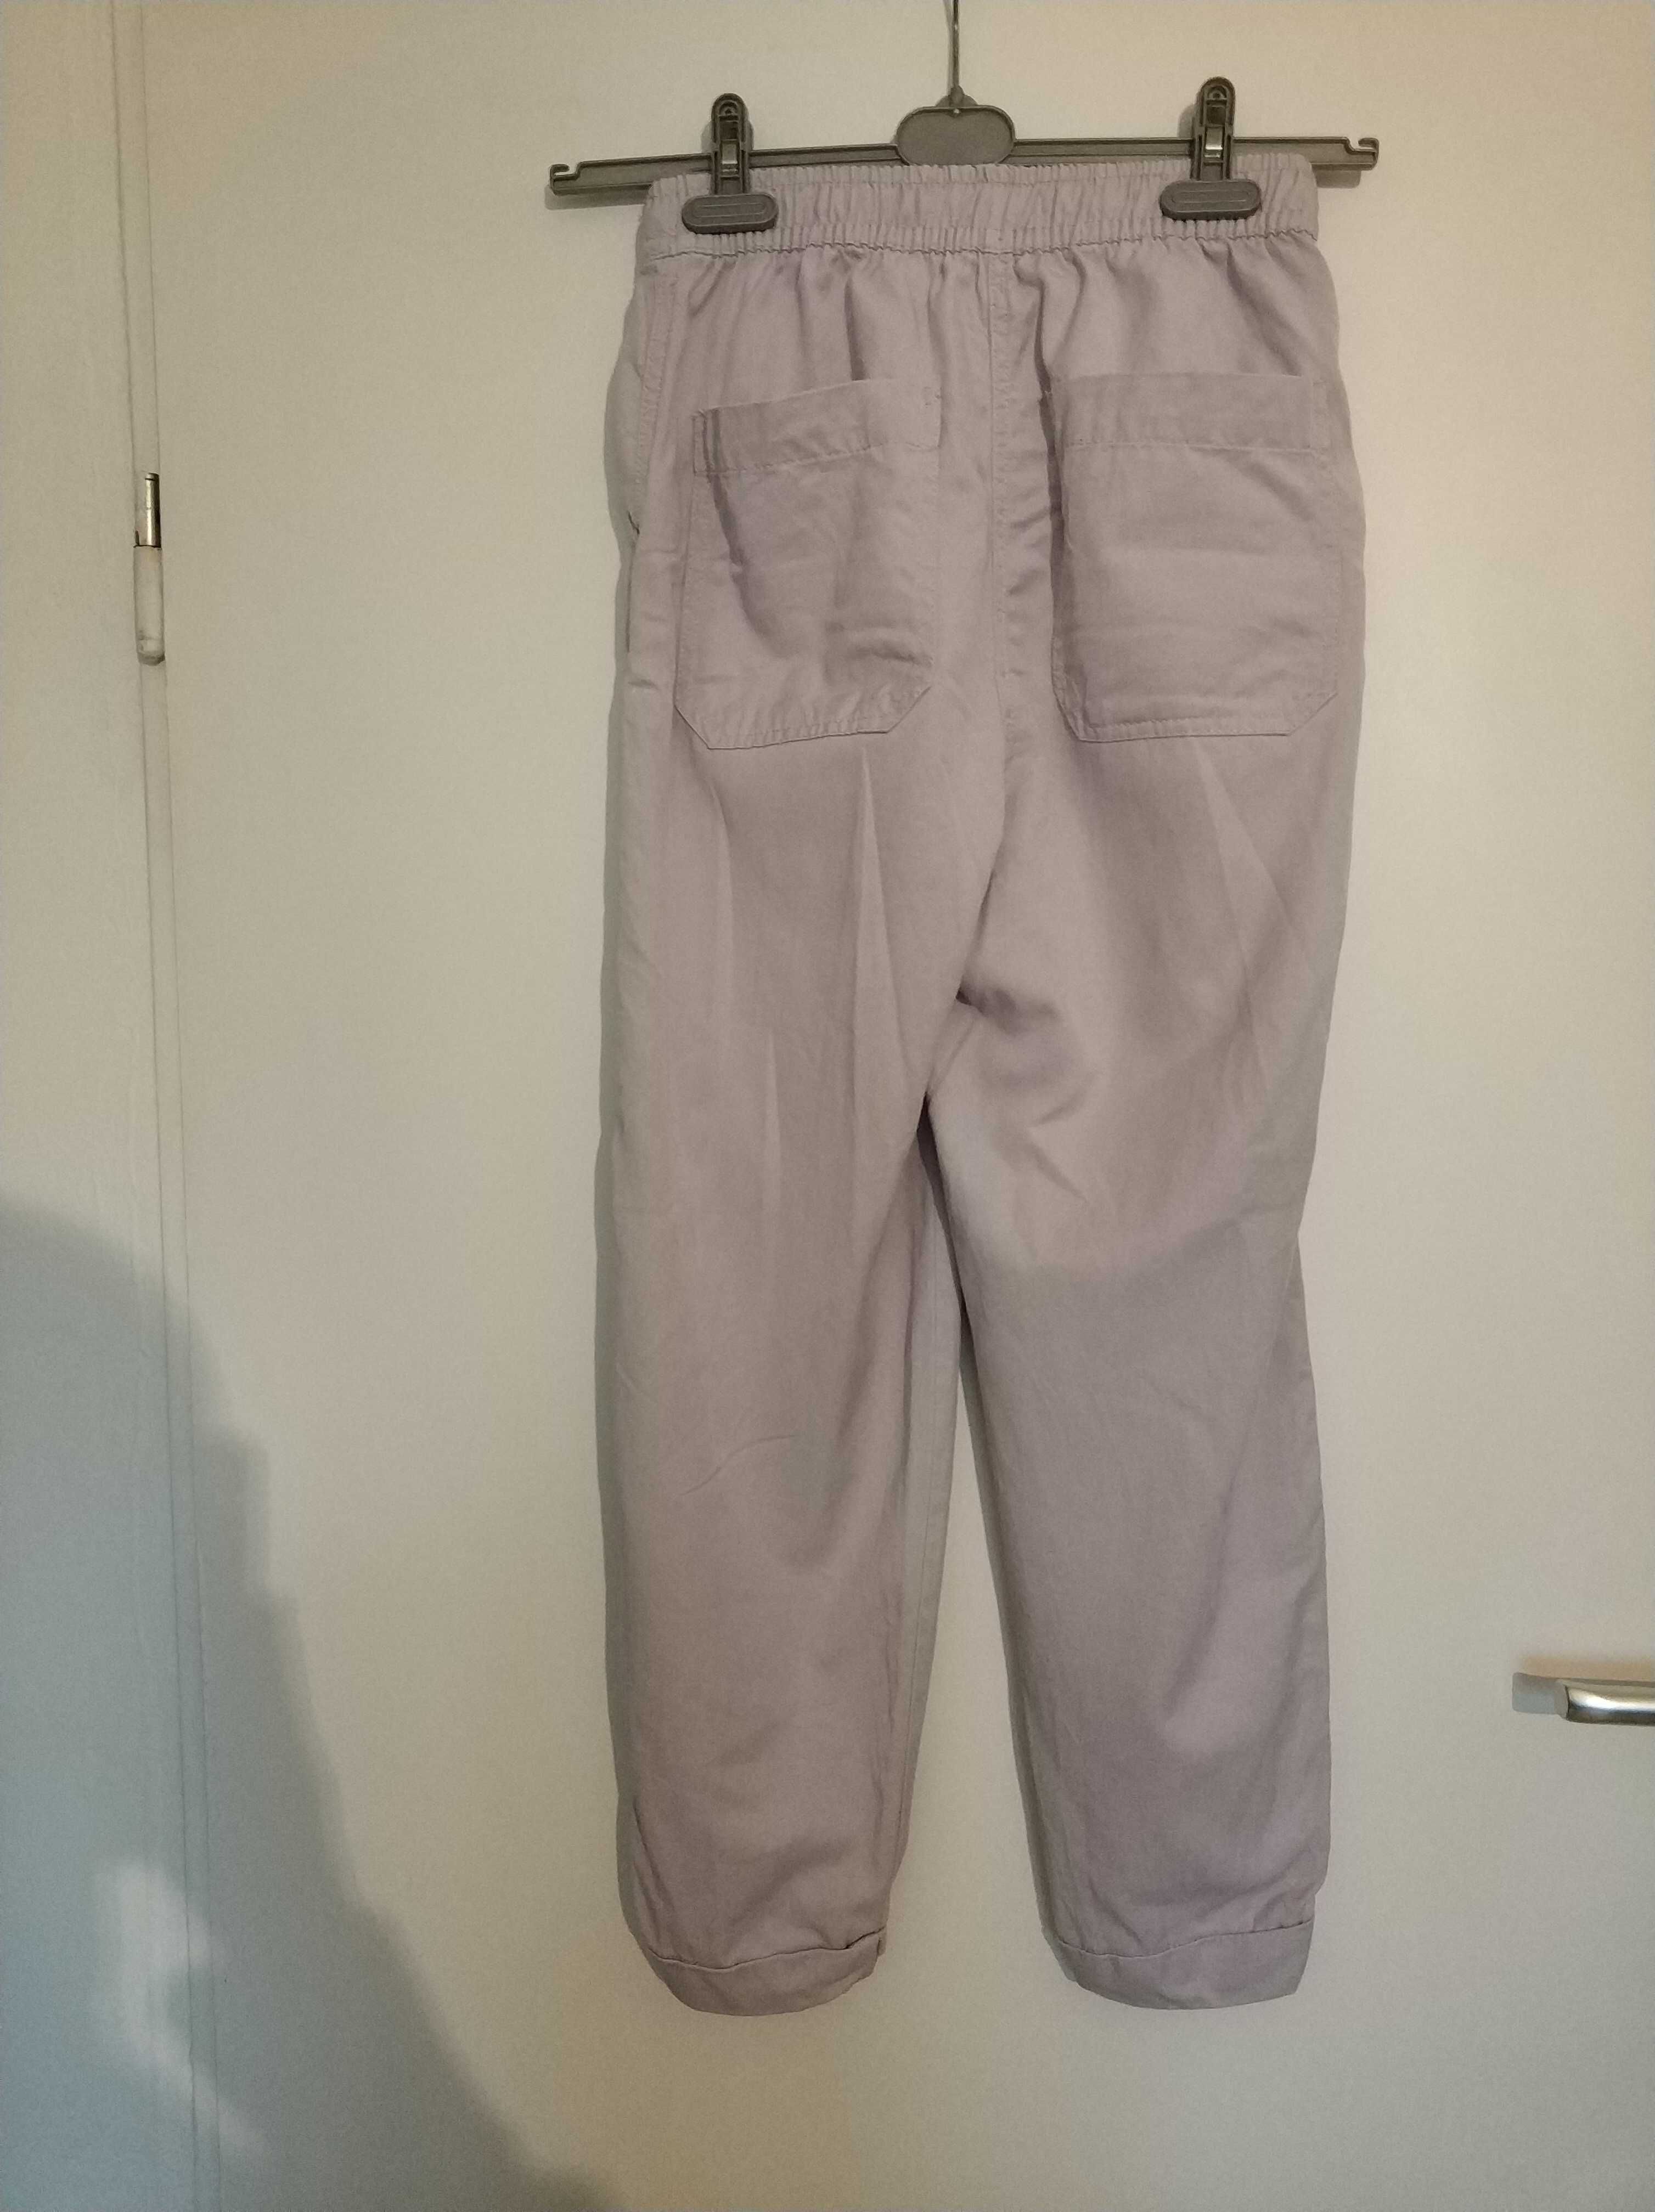 Spodnie sportowe na gumce fiołkowe, liliowe Bershka 36 S